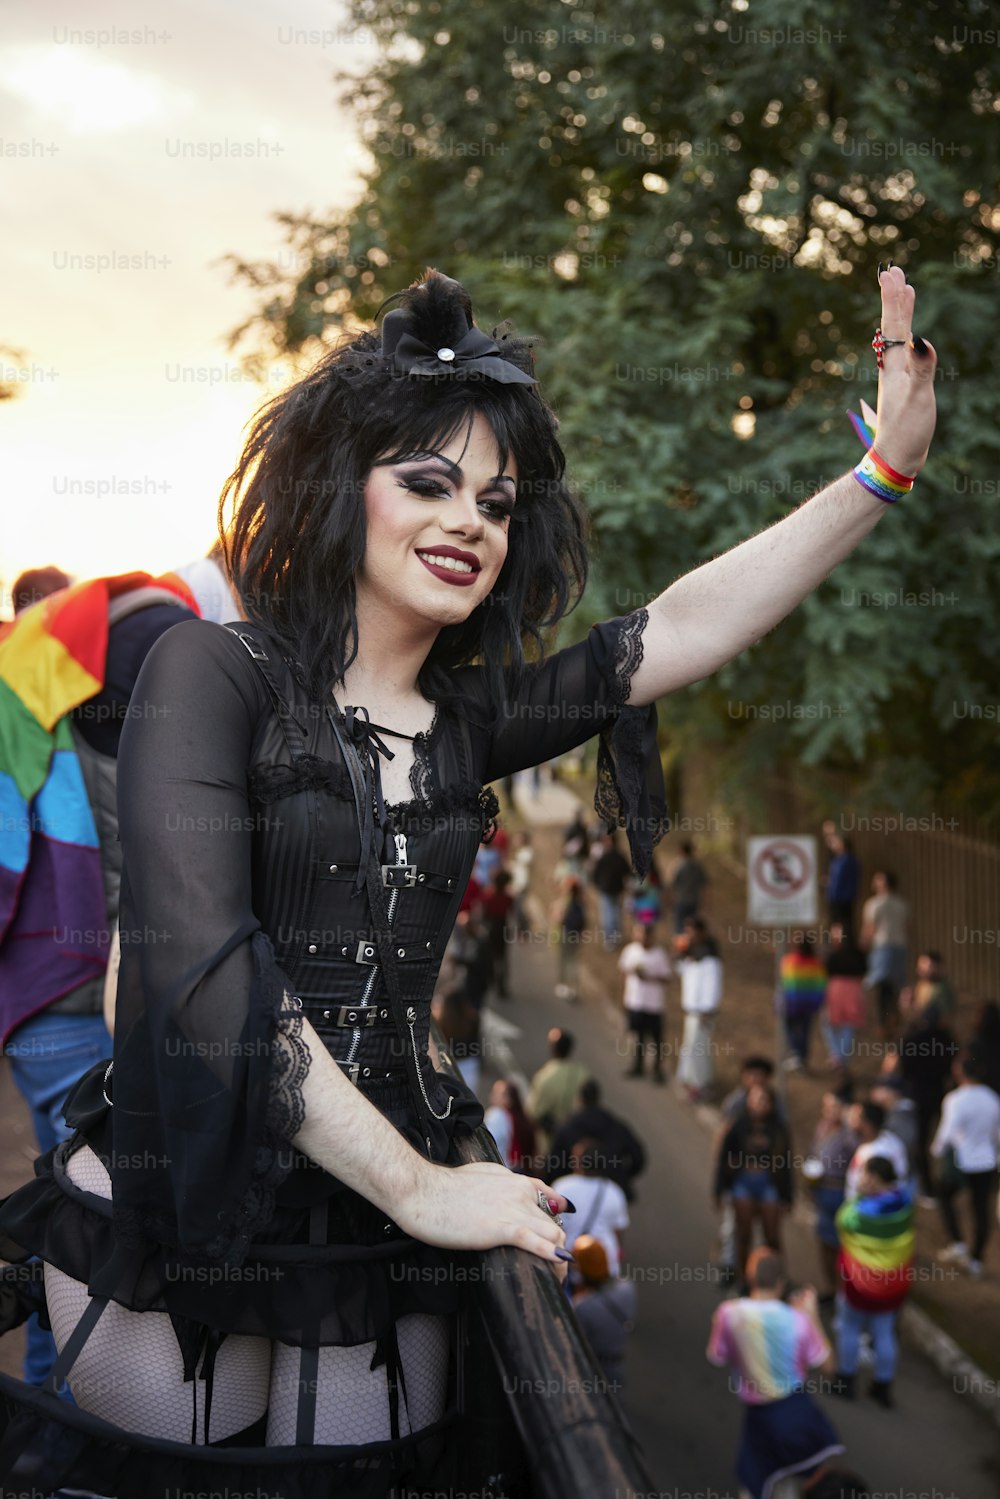 eine Frau in einem schwarzen Outfit und einer Regenbogenflagge